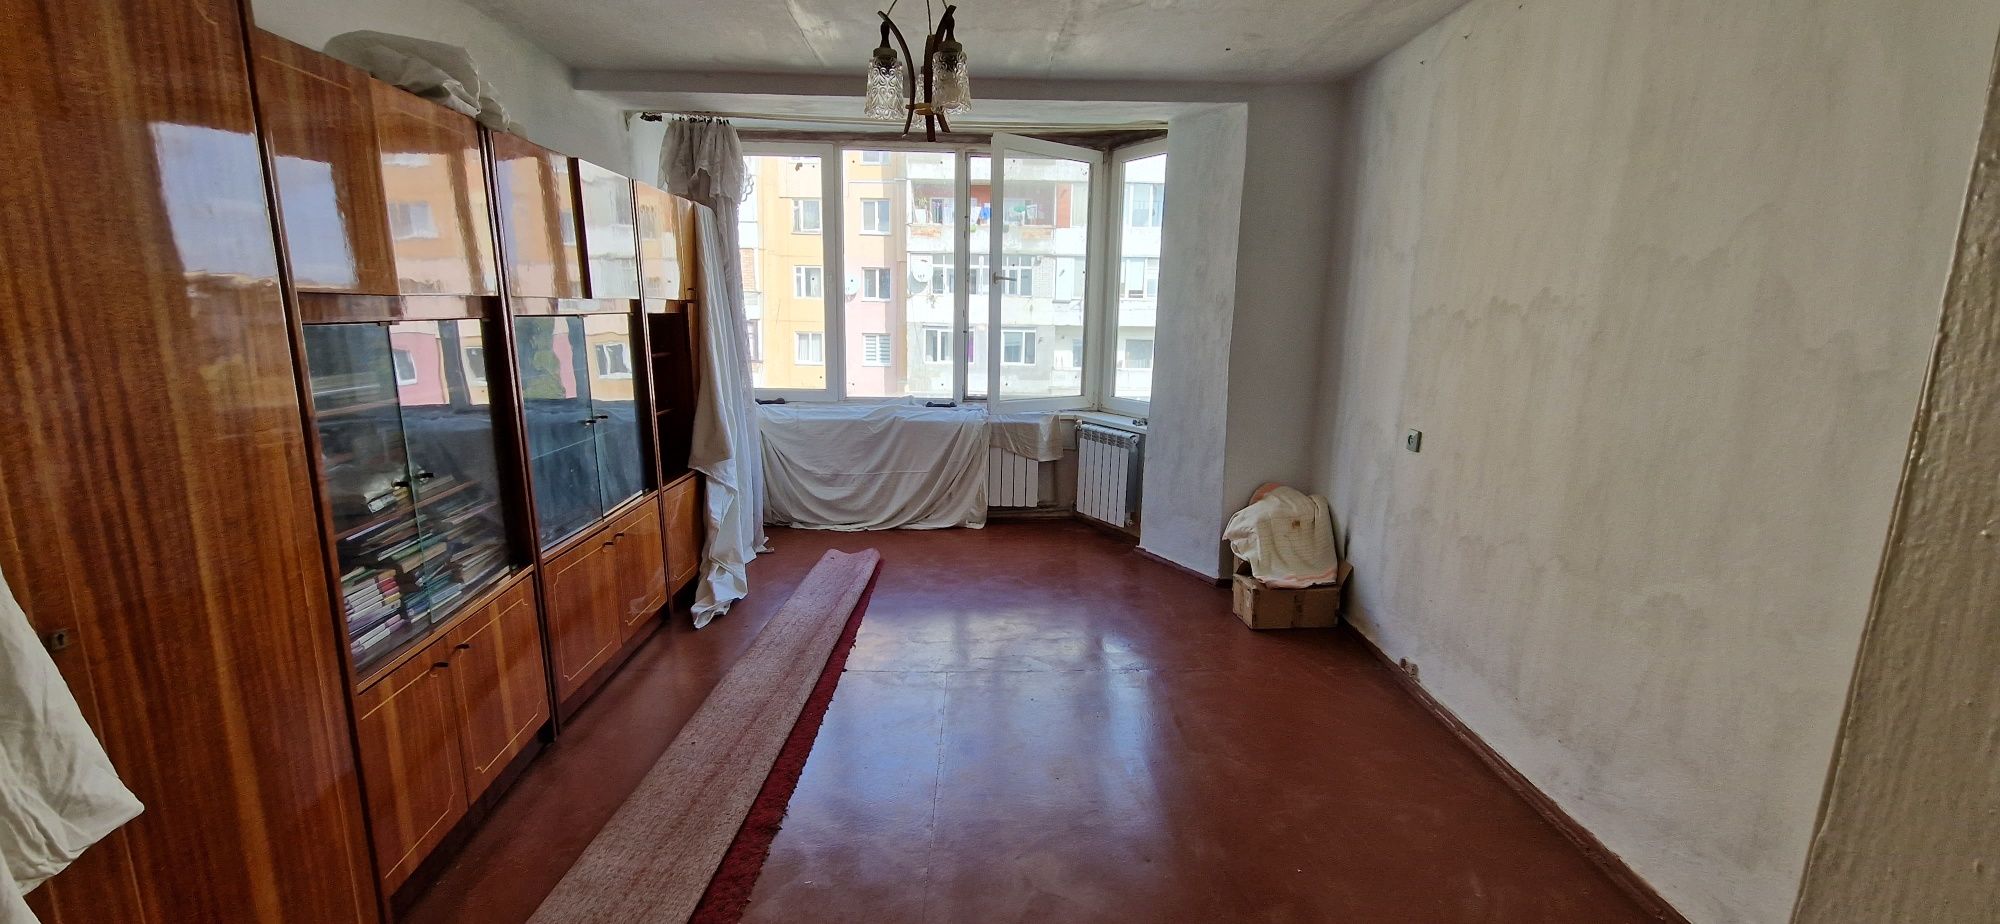 Продам 2-х кімнатну квартиру в Коломиї. Власник